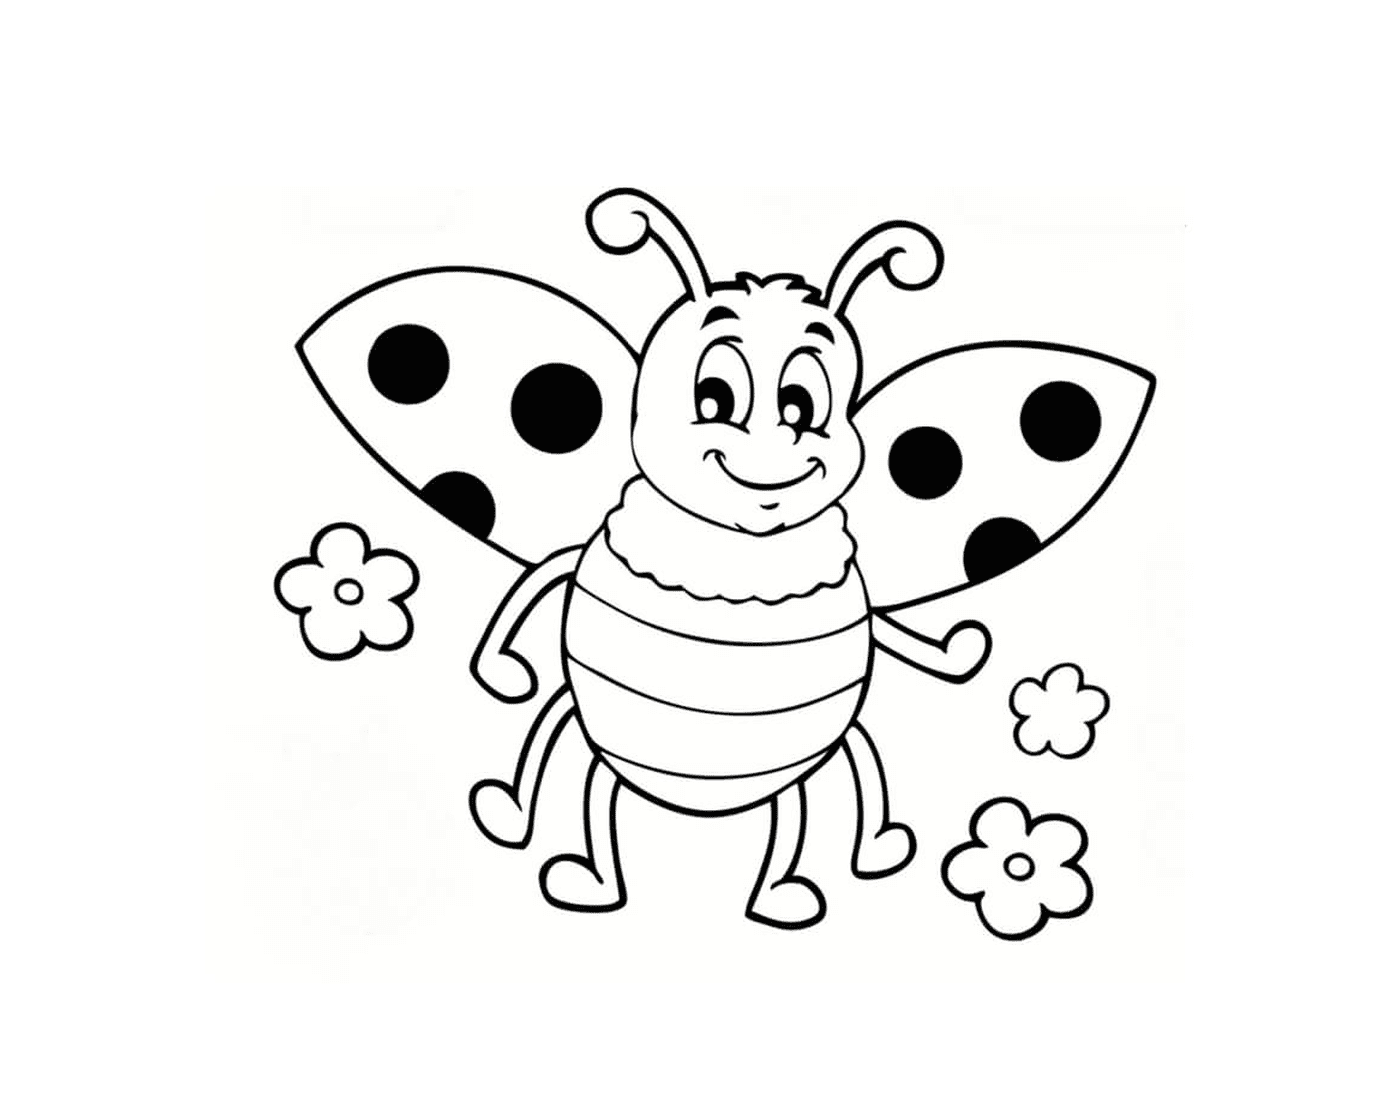  Ziemlich einfache Darstellung eines Marienkäfers für Kinder 